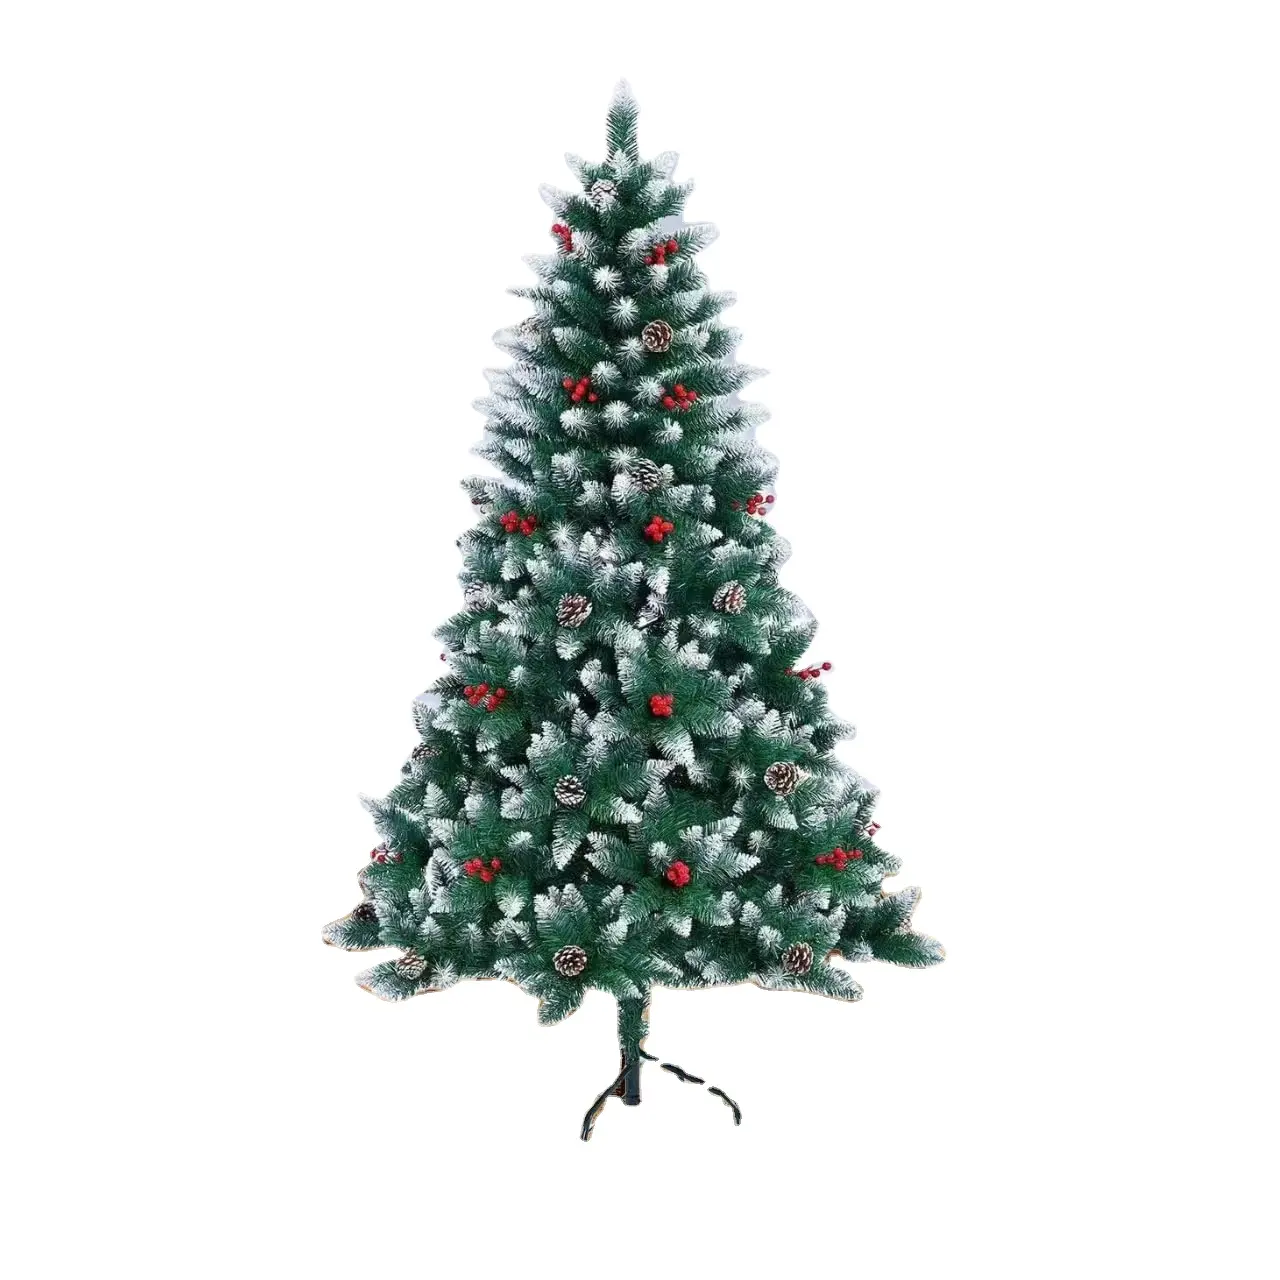 लकड़ी के आधार के साथ क्रिसमस का पेड़, लकड़ी का आधार मिनी क्रिसमस की सजावट के लिए उपयुक्त लकड़ी का आधार मिनी क्रिसमस ट्री